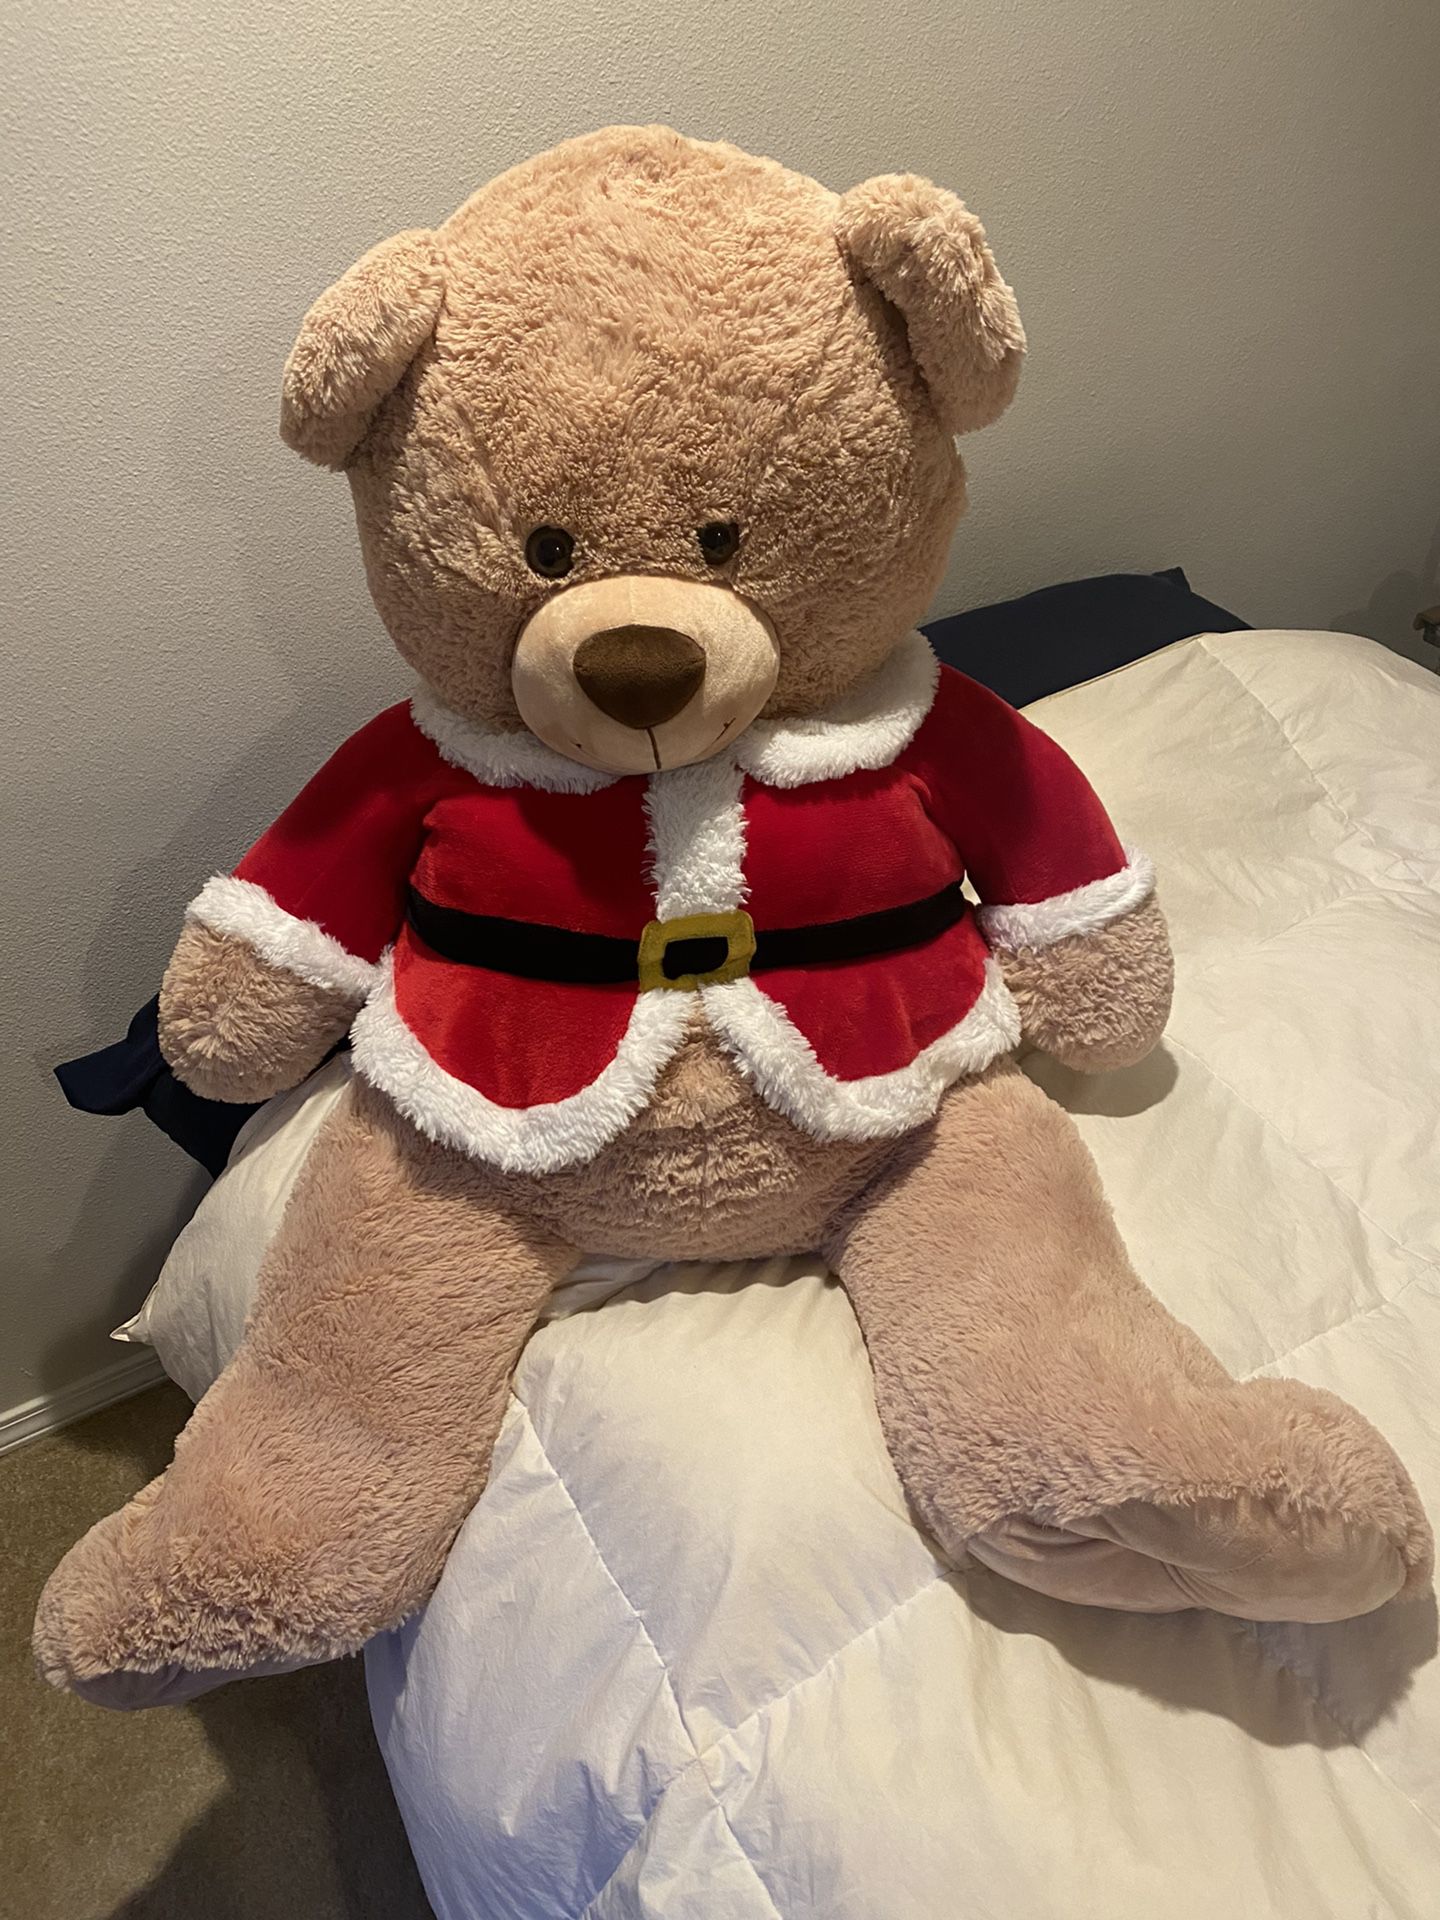 Giant Santa Teddy Bear